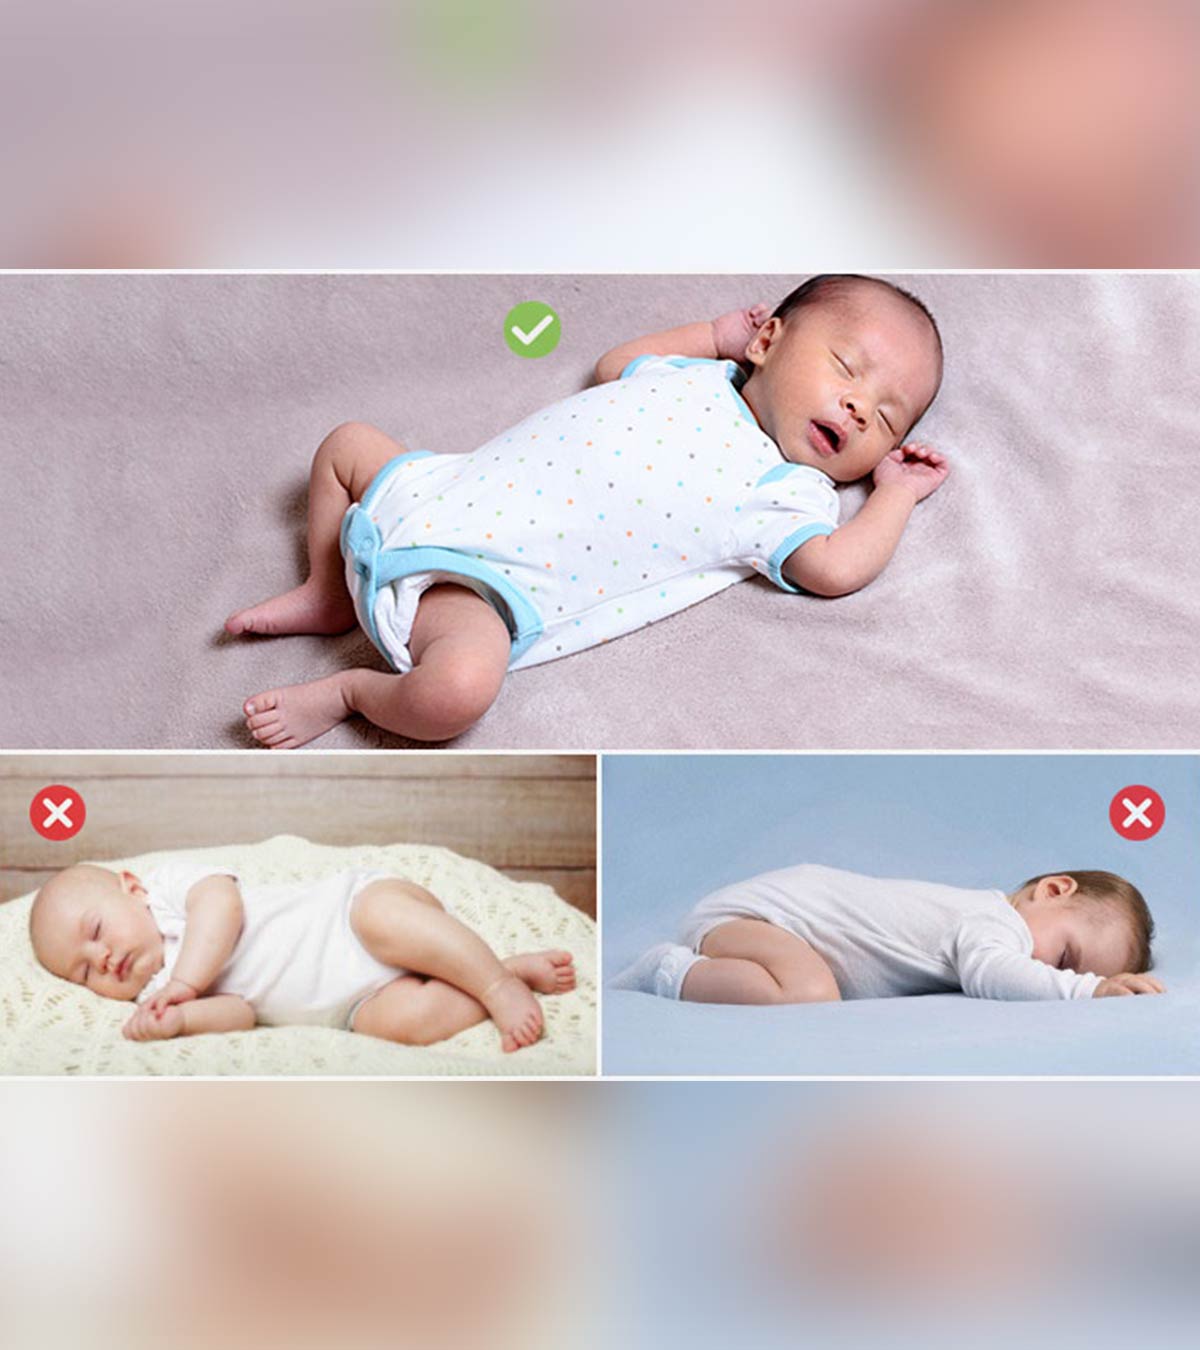 शिशु को किस पोजीशन में सुलाना सुरक्षित है? | Baby Ko Kis Position Me Sulana Chahiye